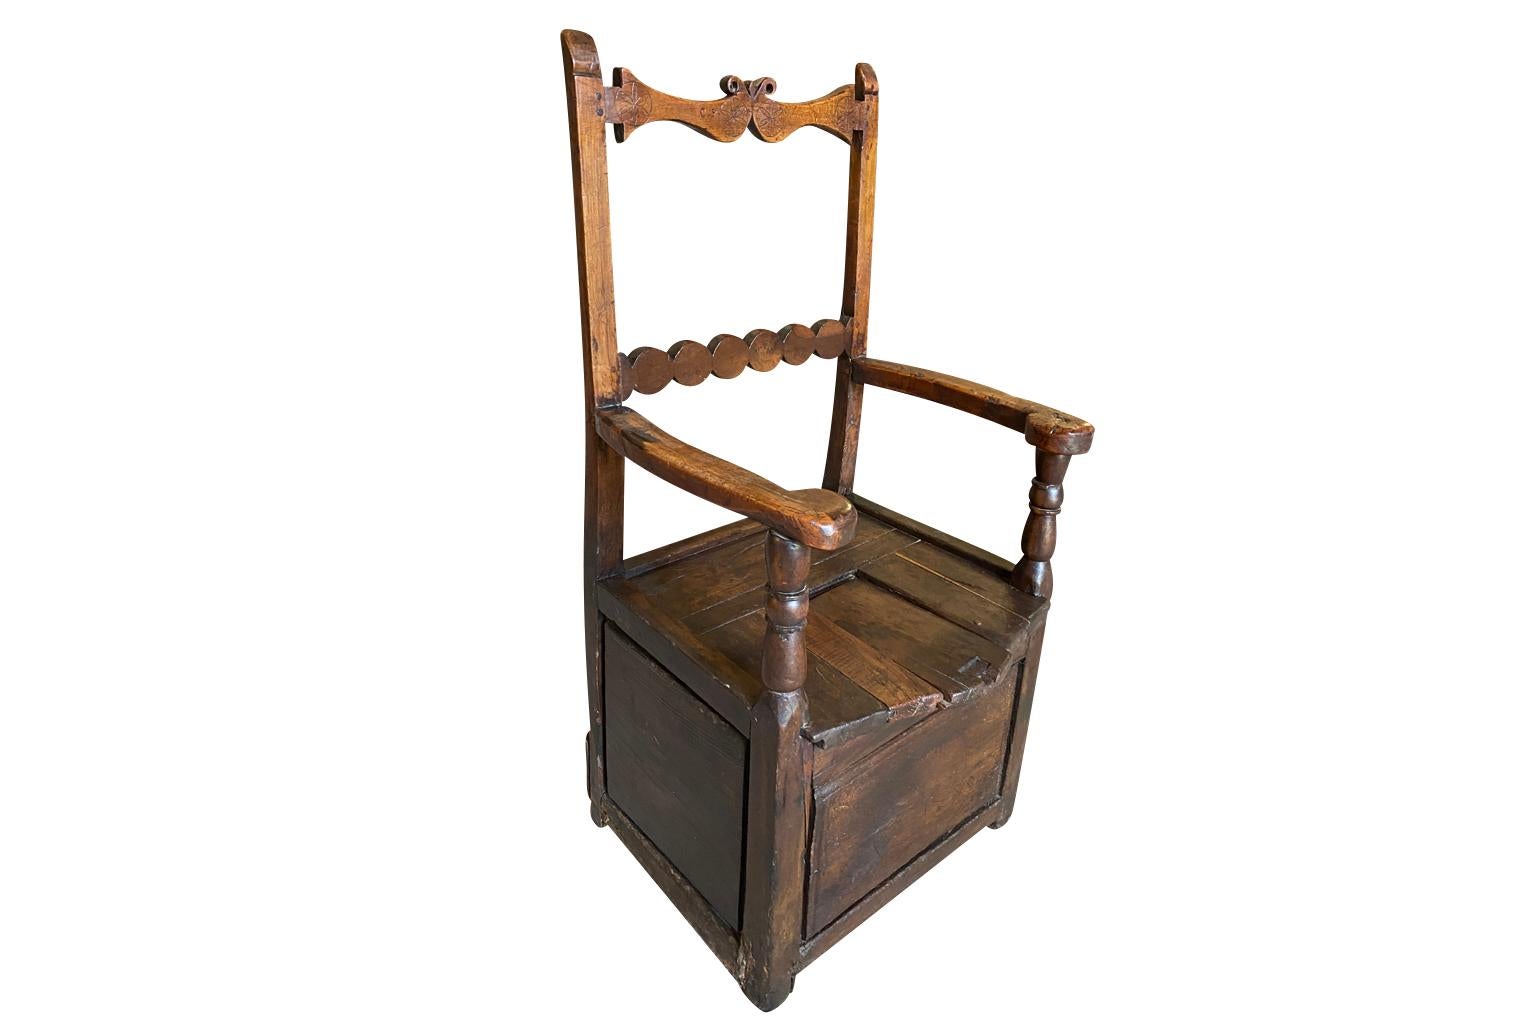 Charmante chaise à boîte à sel Arte Populaire du XVIIIe siècle, originaire d'Auvergne, France.  Construit en chêne richement teinté, avec un dossier joliment sculpté et une latte amovible sur l'assise pour le rangement du sel.  Superbe patine avec